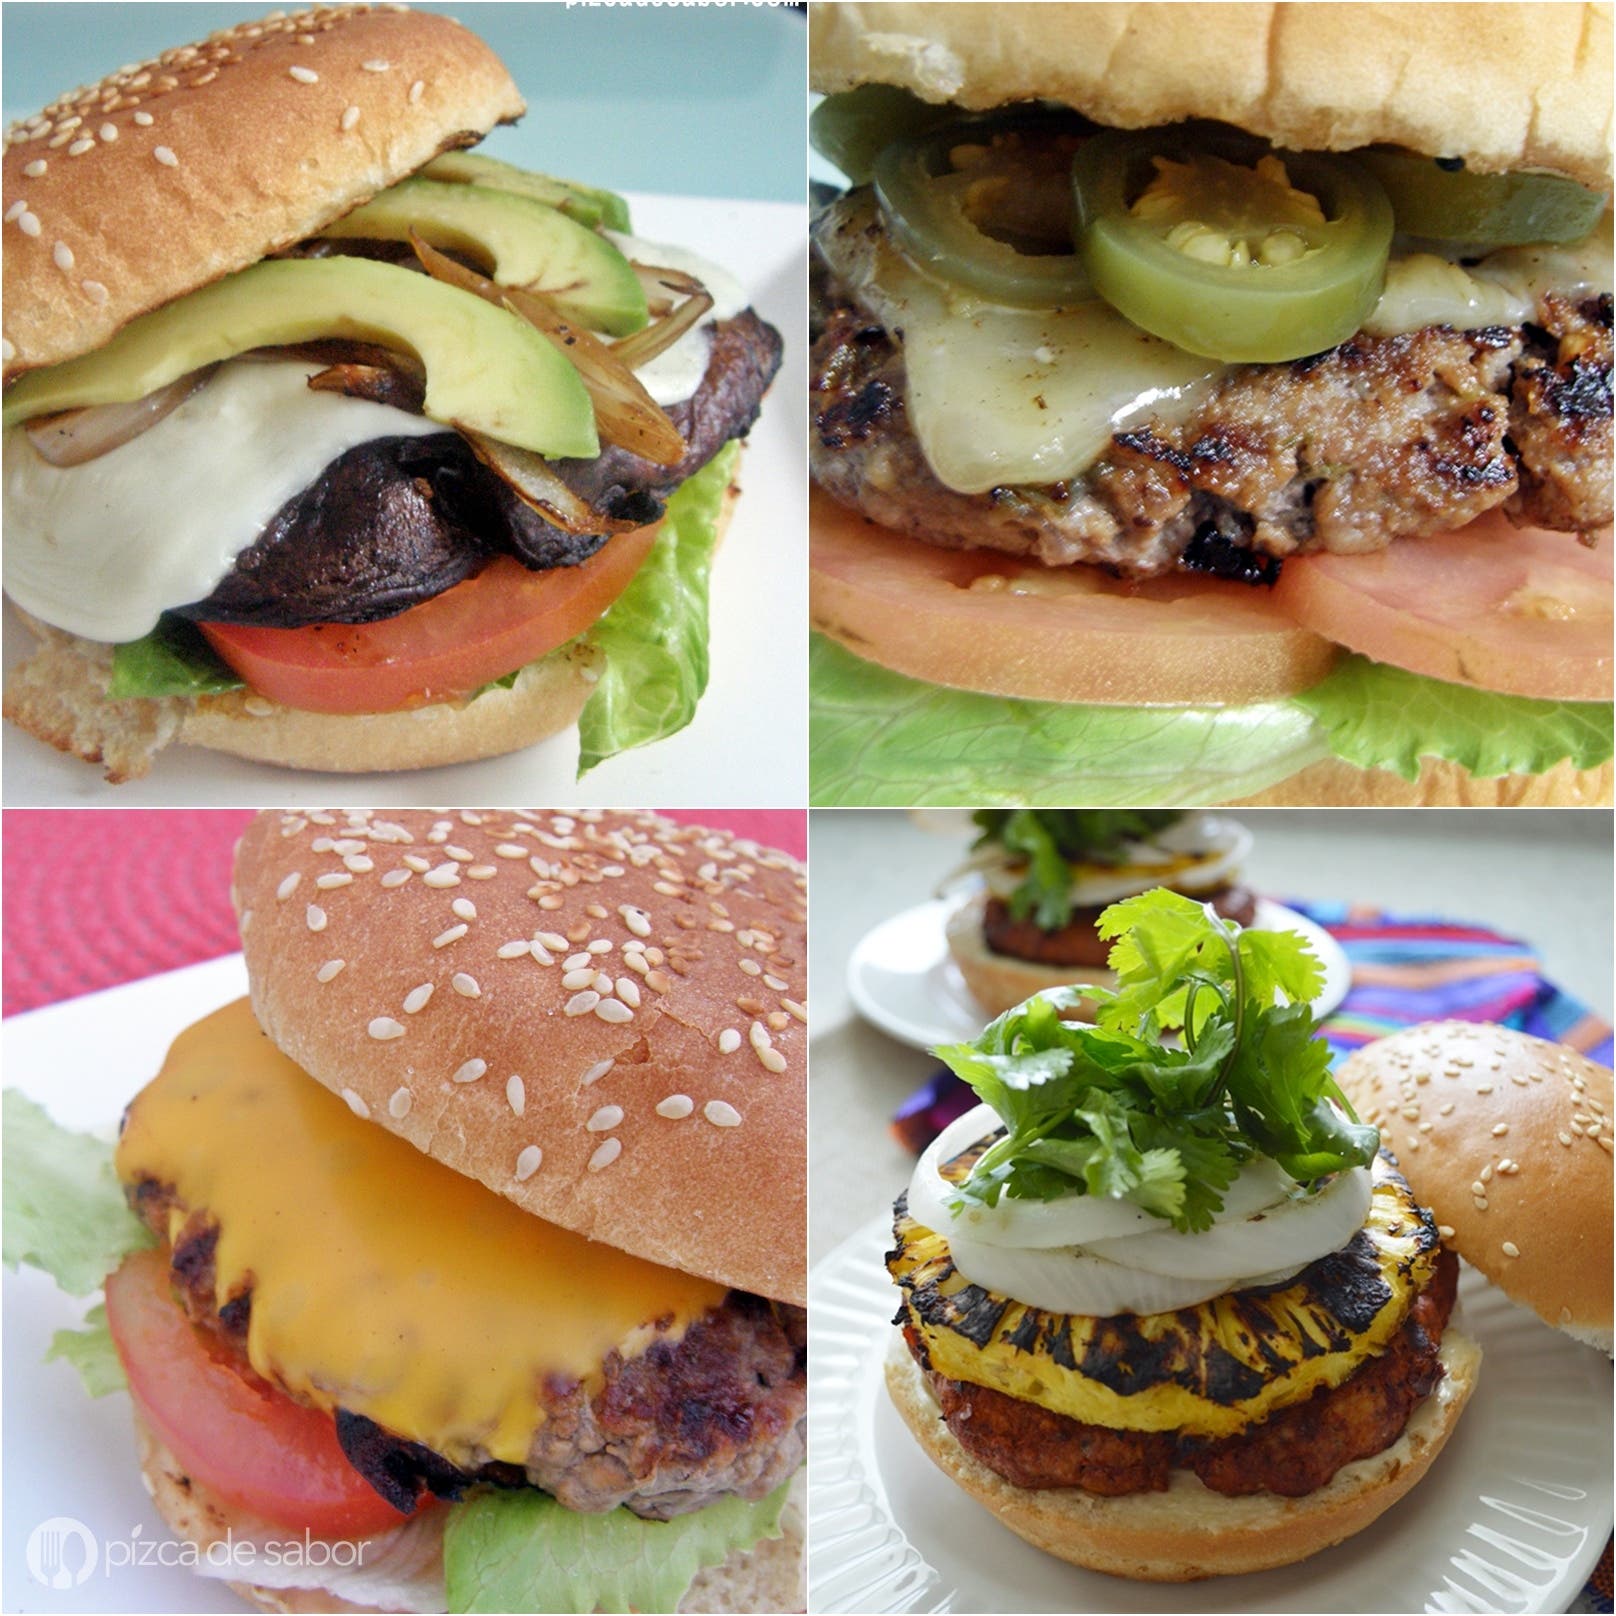 Burger Day www.pizcadesabor.com